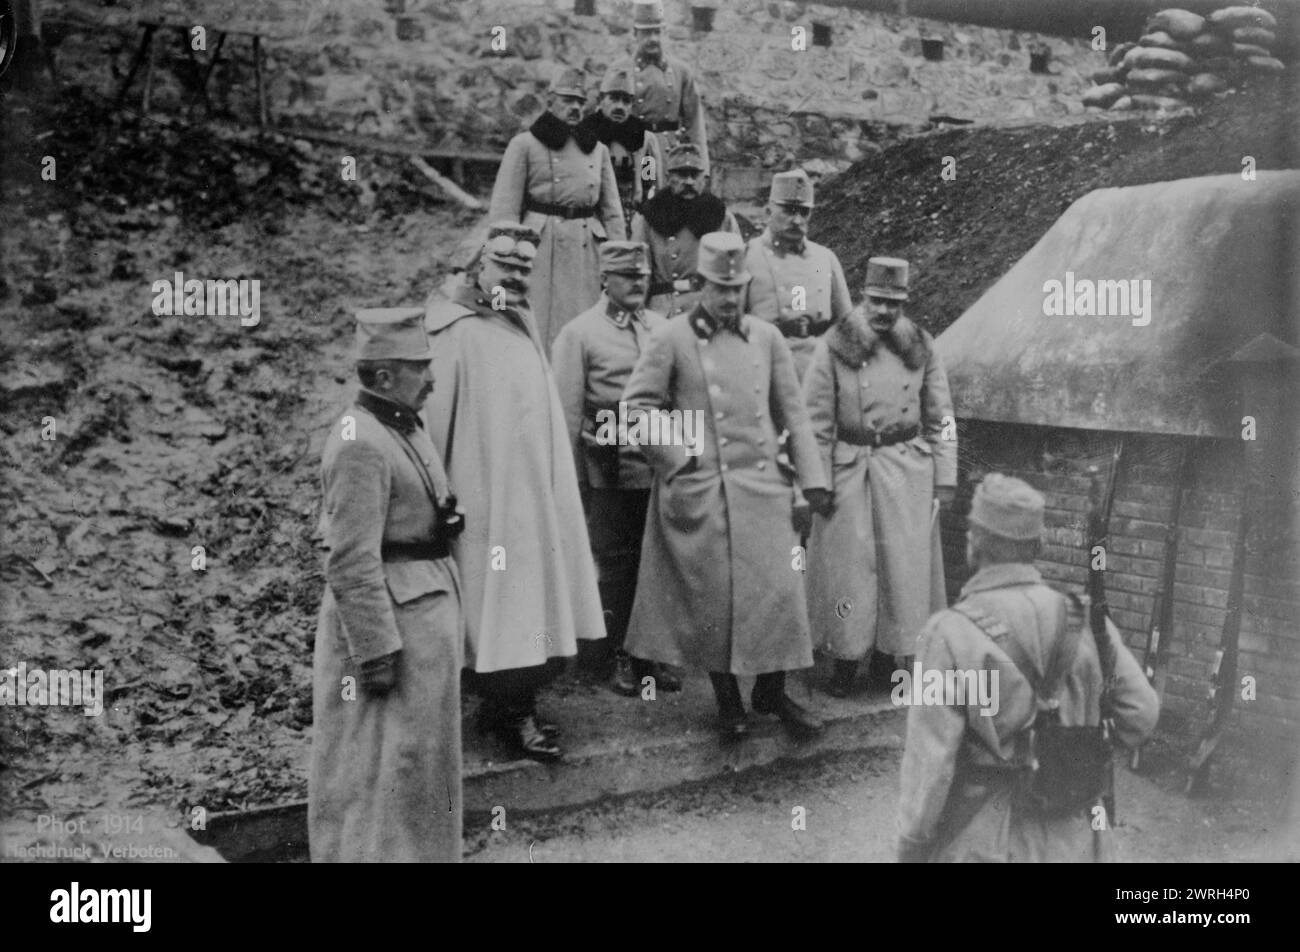 Karl Franz Josef nel forte di Przemysl, 1914 (data creata o pubblicata successivamente). Carlo Francesco Giuseppe (Carlo i d'Austria) (1887-1922) visitò la fortezza di Przemysl, Przemysl, l'Impero austro-ungarico (ora in Polonia) durante la prima guerra mondiale Foto Stock